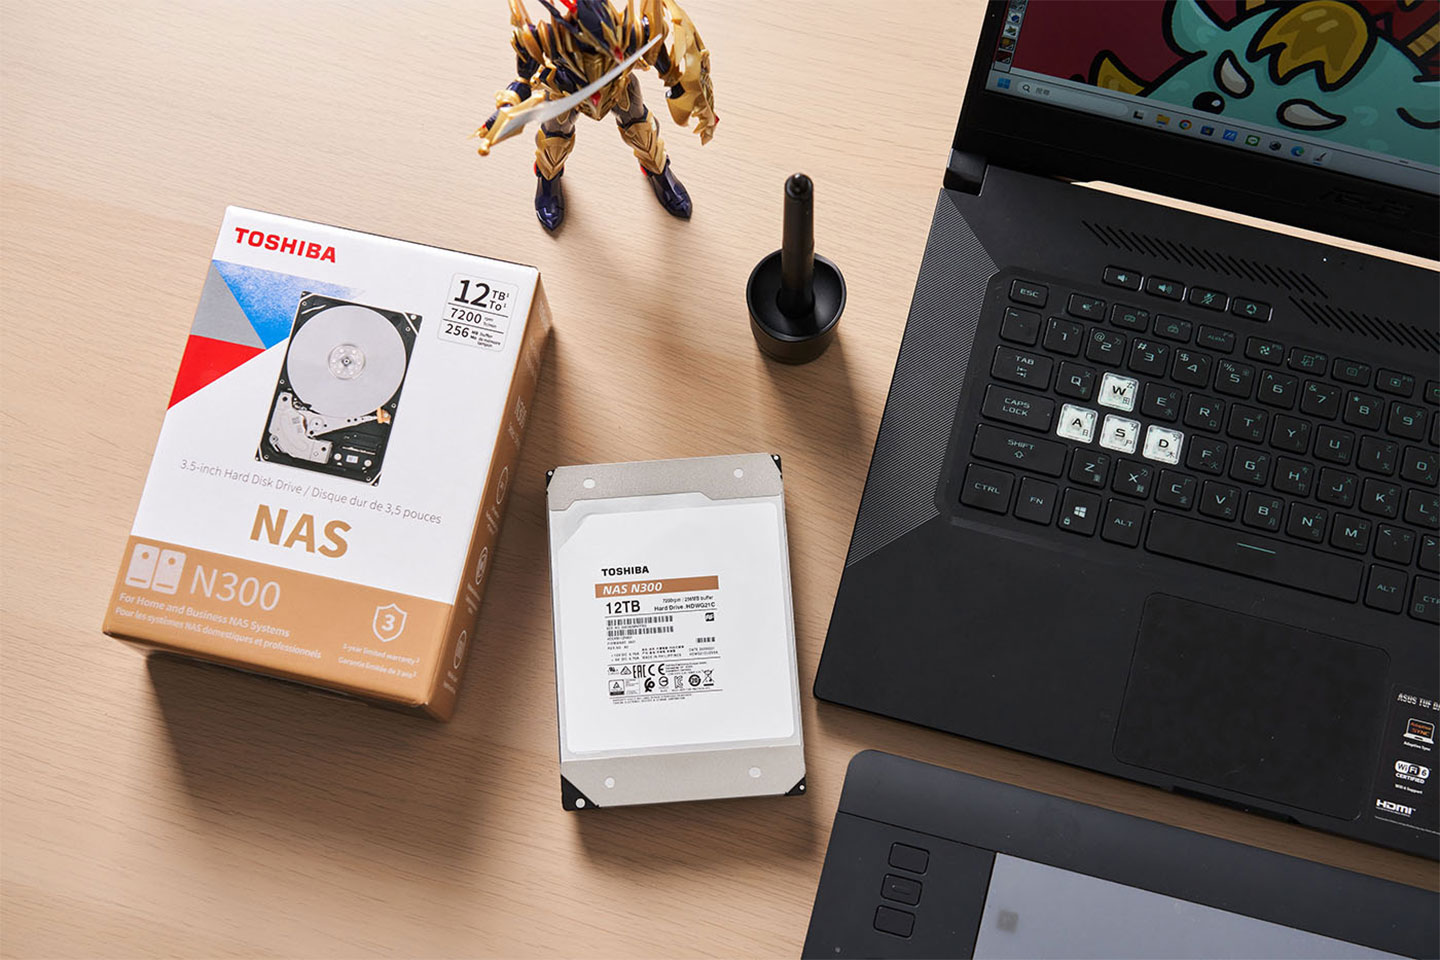 Gary 選擇了許多人推薦的日系品牌 Toshiba 所推出的 NAS 專用硬碟 N300 的單顆硬碟 12TB 規格，能滿足他對於龐大數位資料儲的需求。